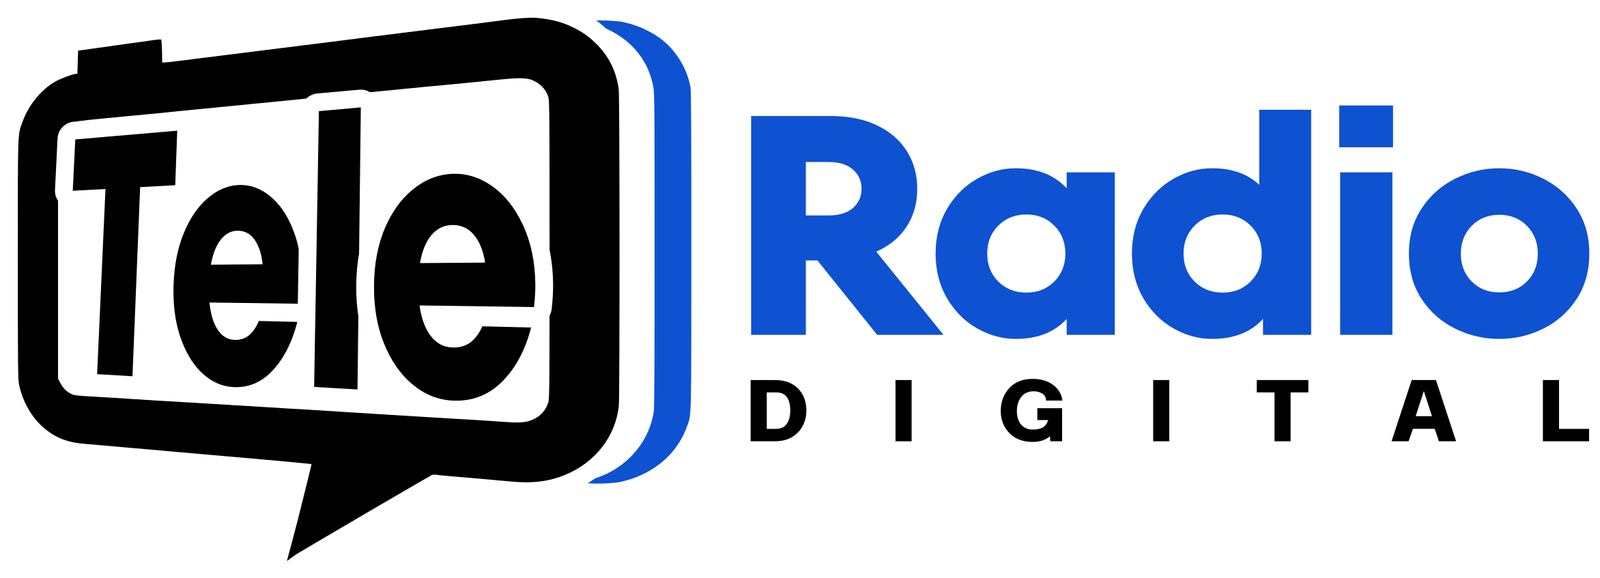 Tele Radio Digital